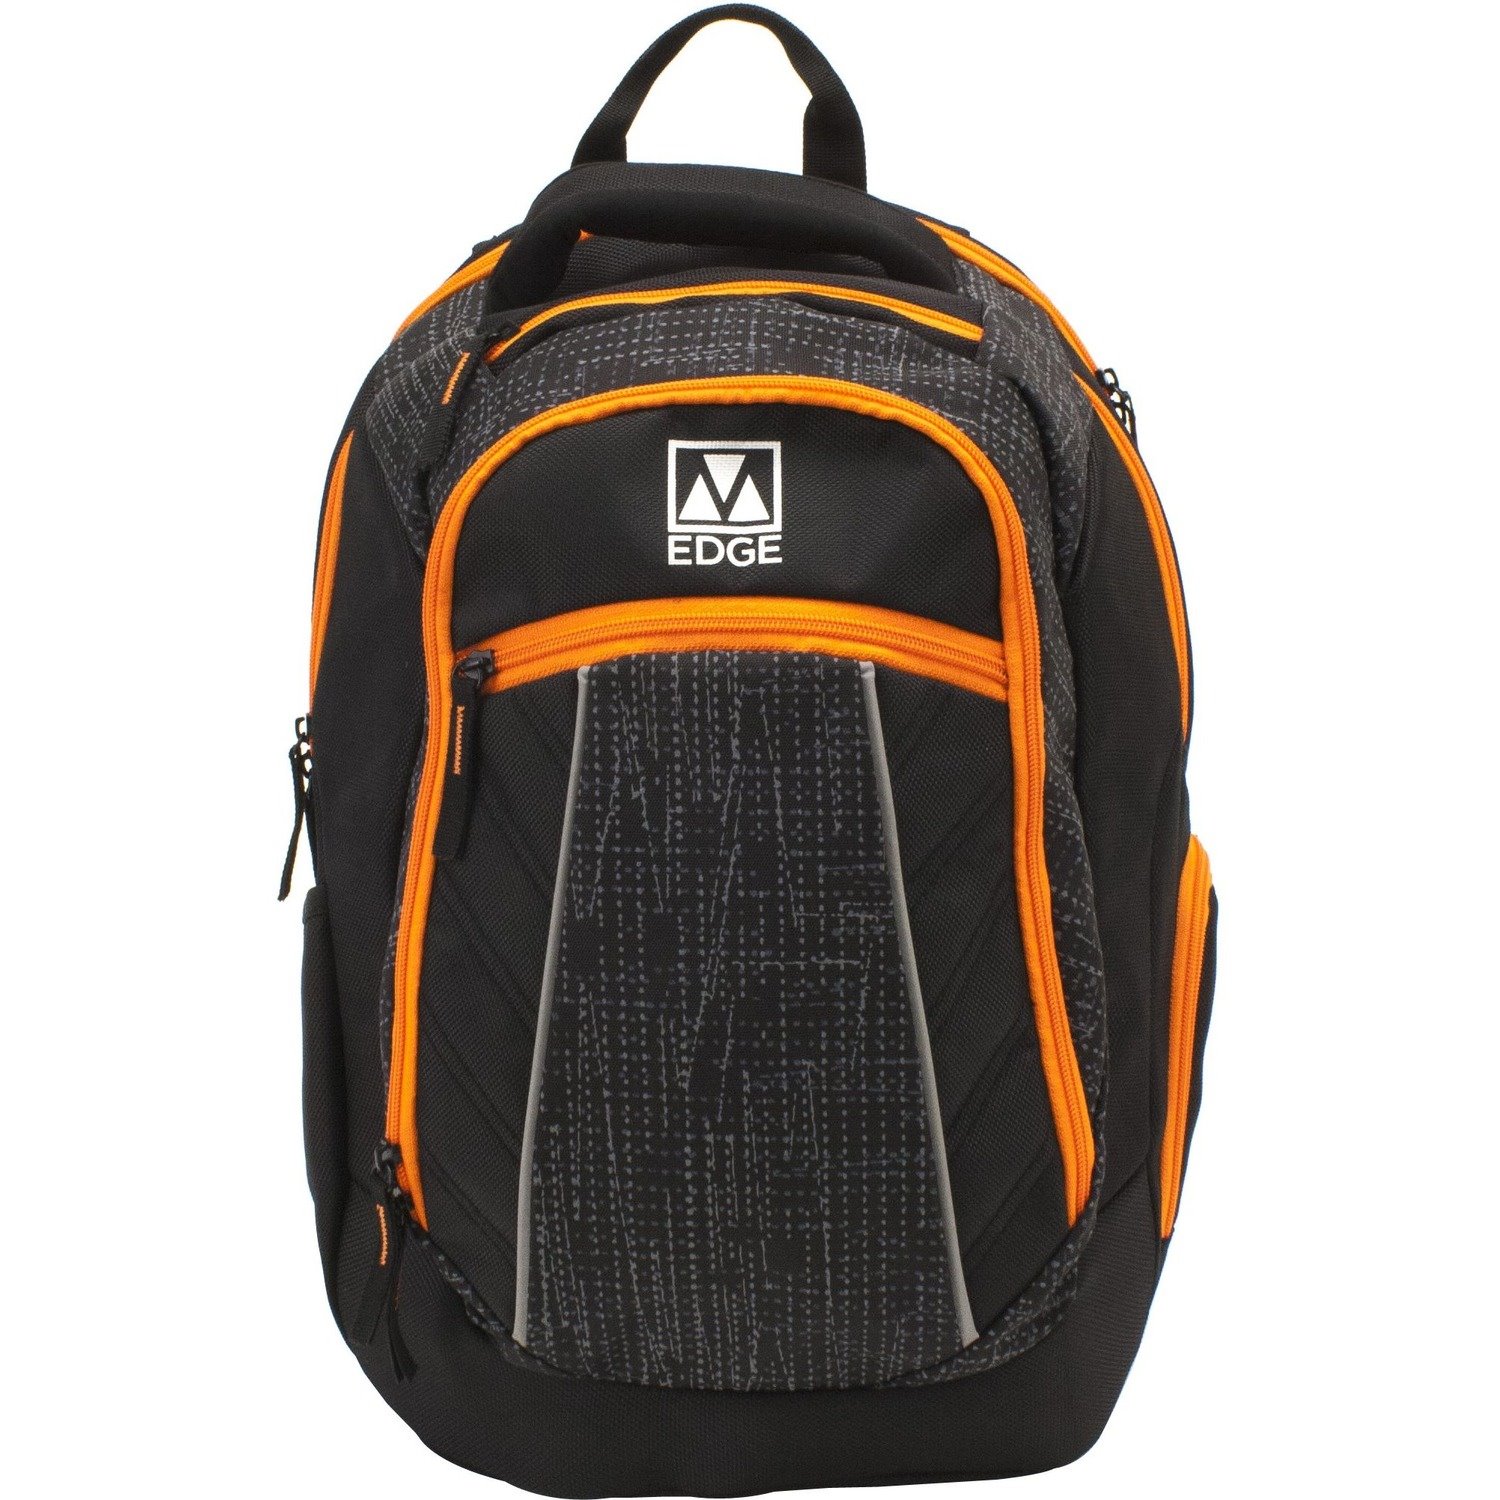 M-Edge Commuter BPK-CO6-PO-BO Carrying Case (Backpack) for 17" Notebook - Black, Orange